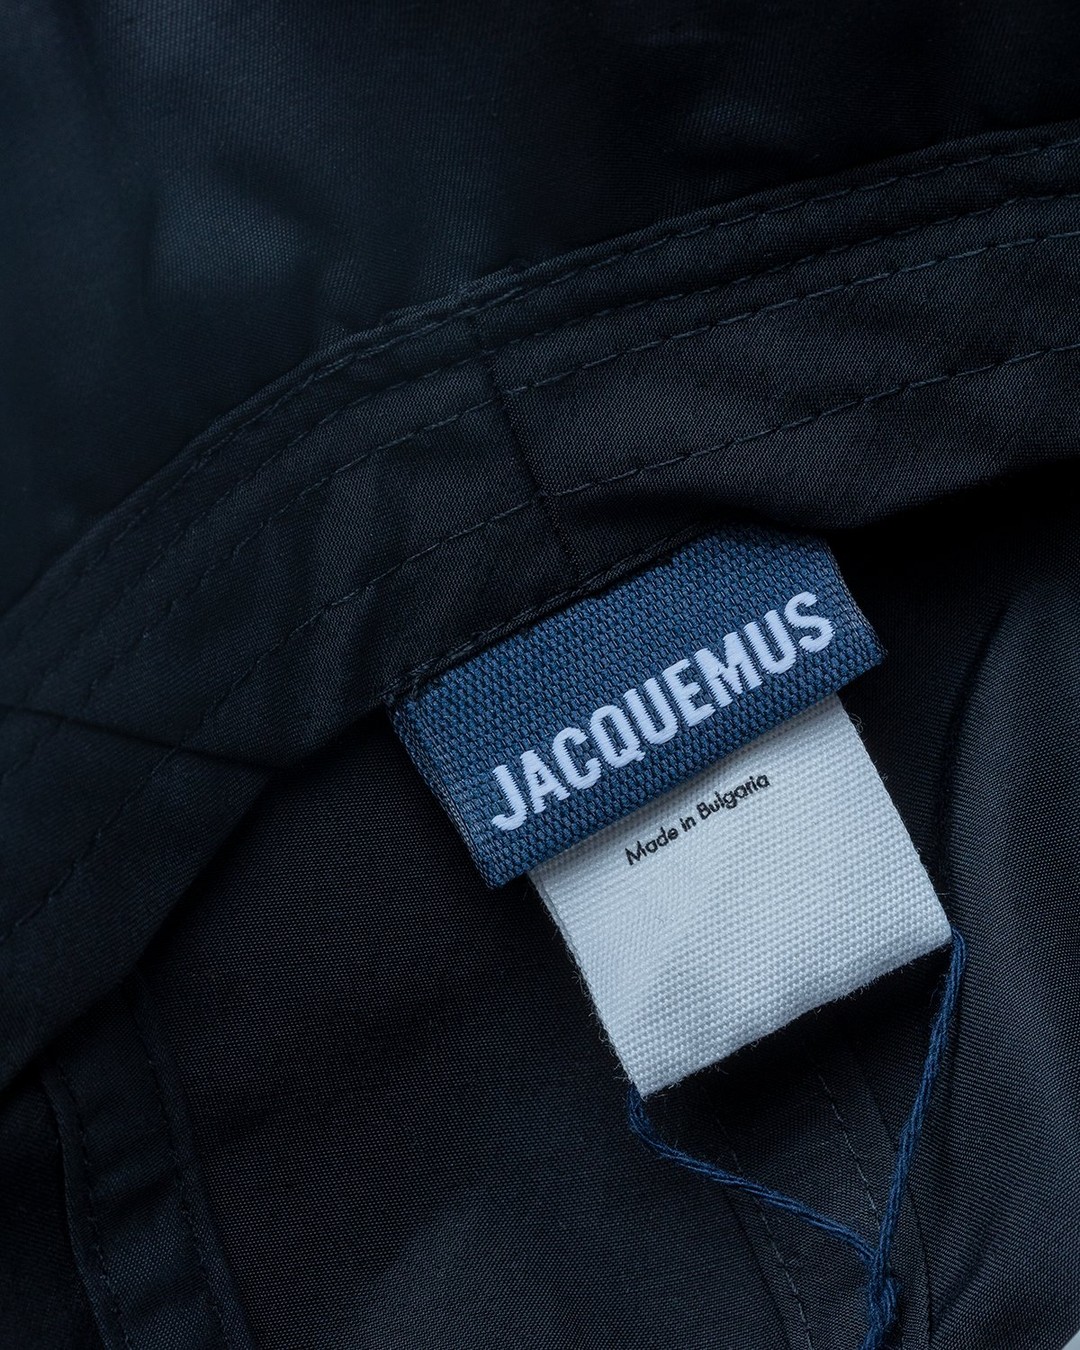 JACQUEMUS – La Casquette Cagoule Black - Caps - Black - Image 5